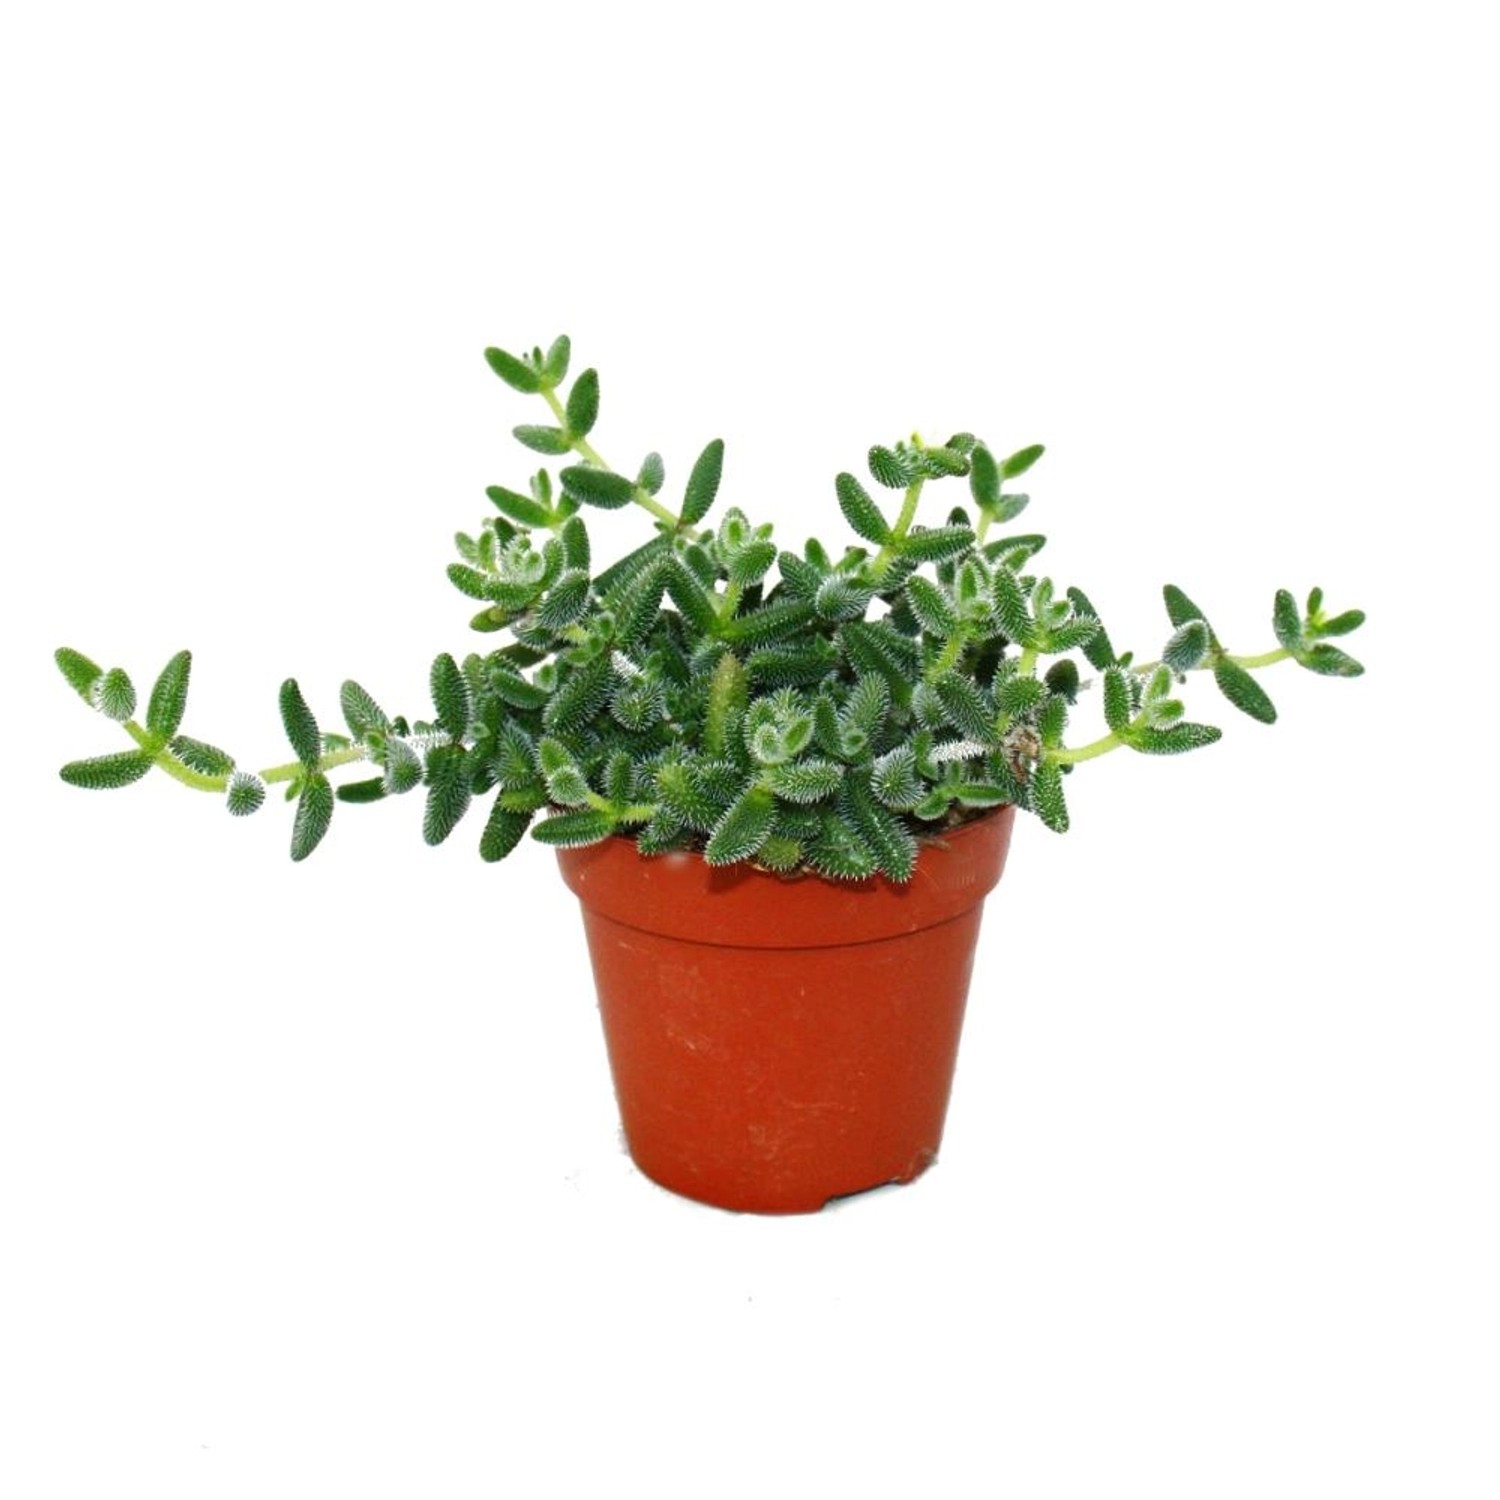 Exotenherz Saure Gurken Pflanze Delosperma Echinatum 12cm Topf günstig online kaufen